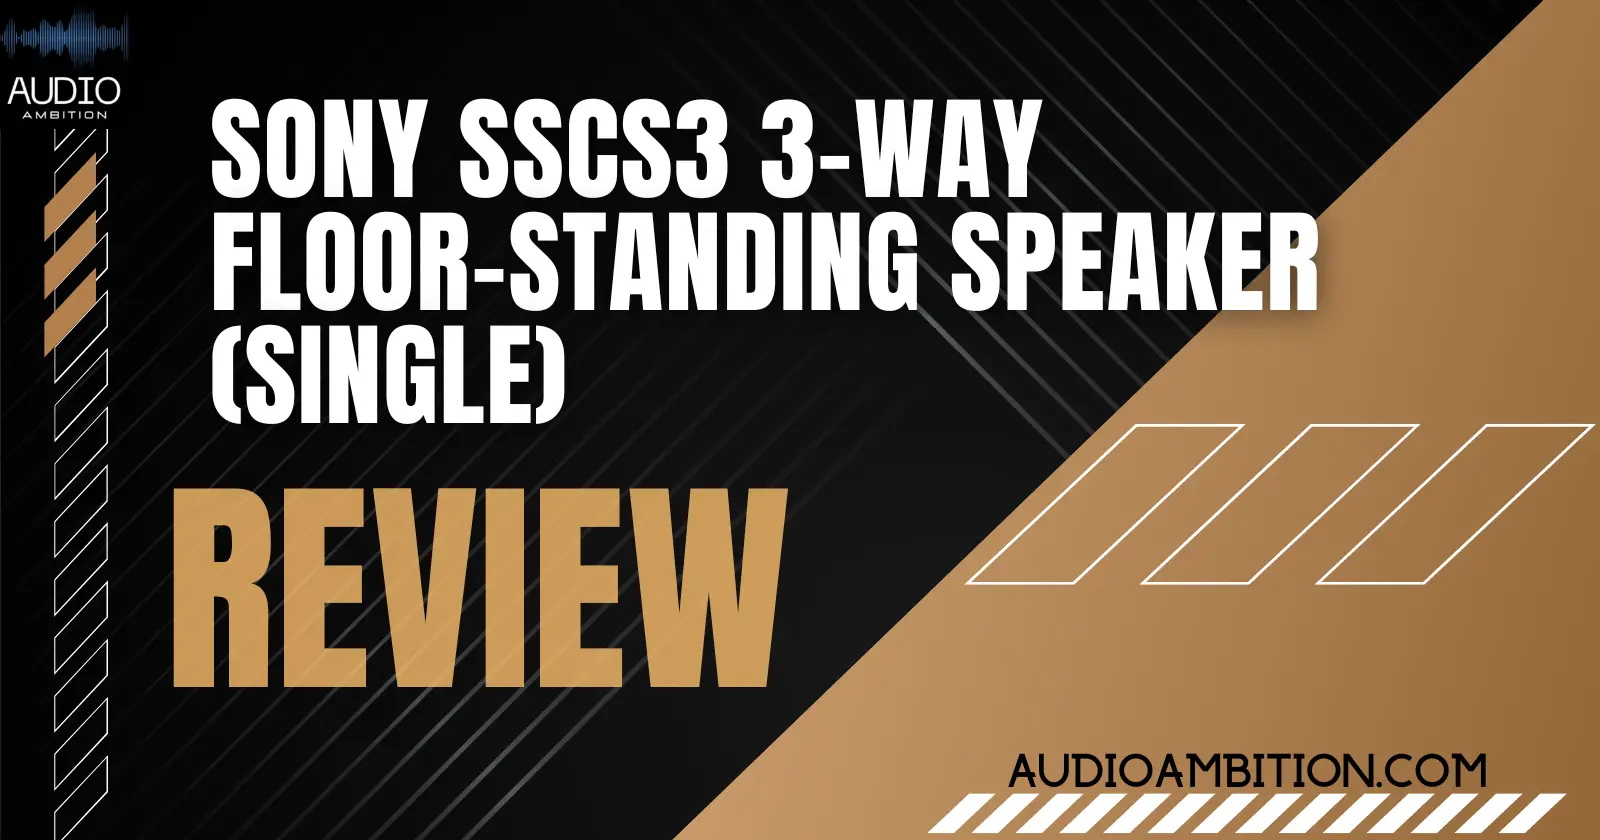 Sony SSCS3 3-Way Floor-Standing Speaker (Single)